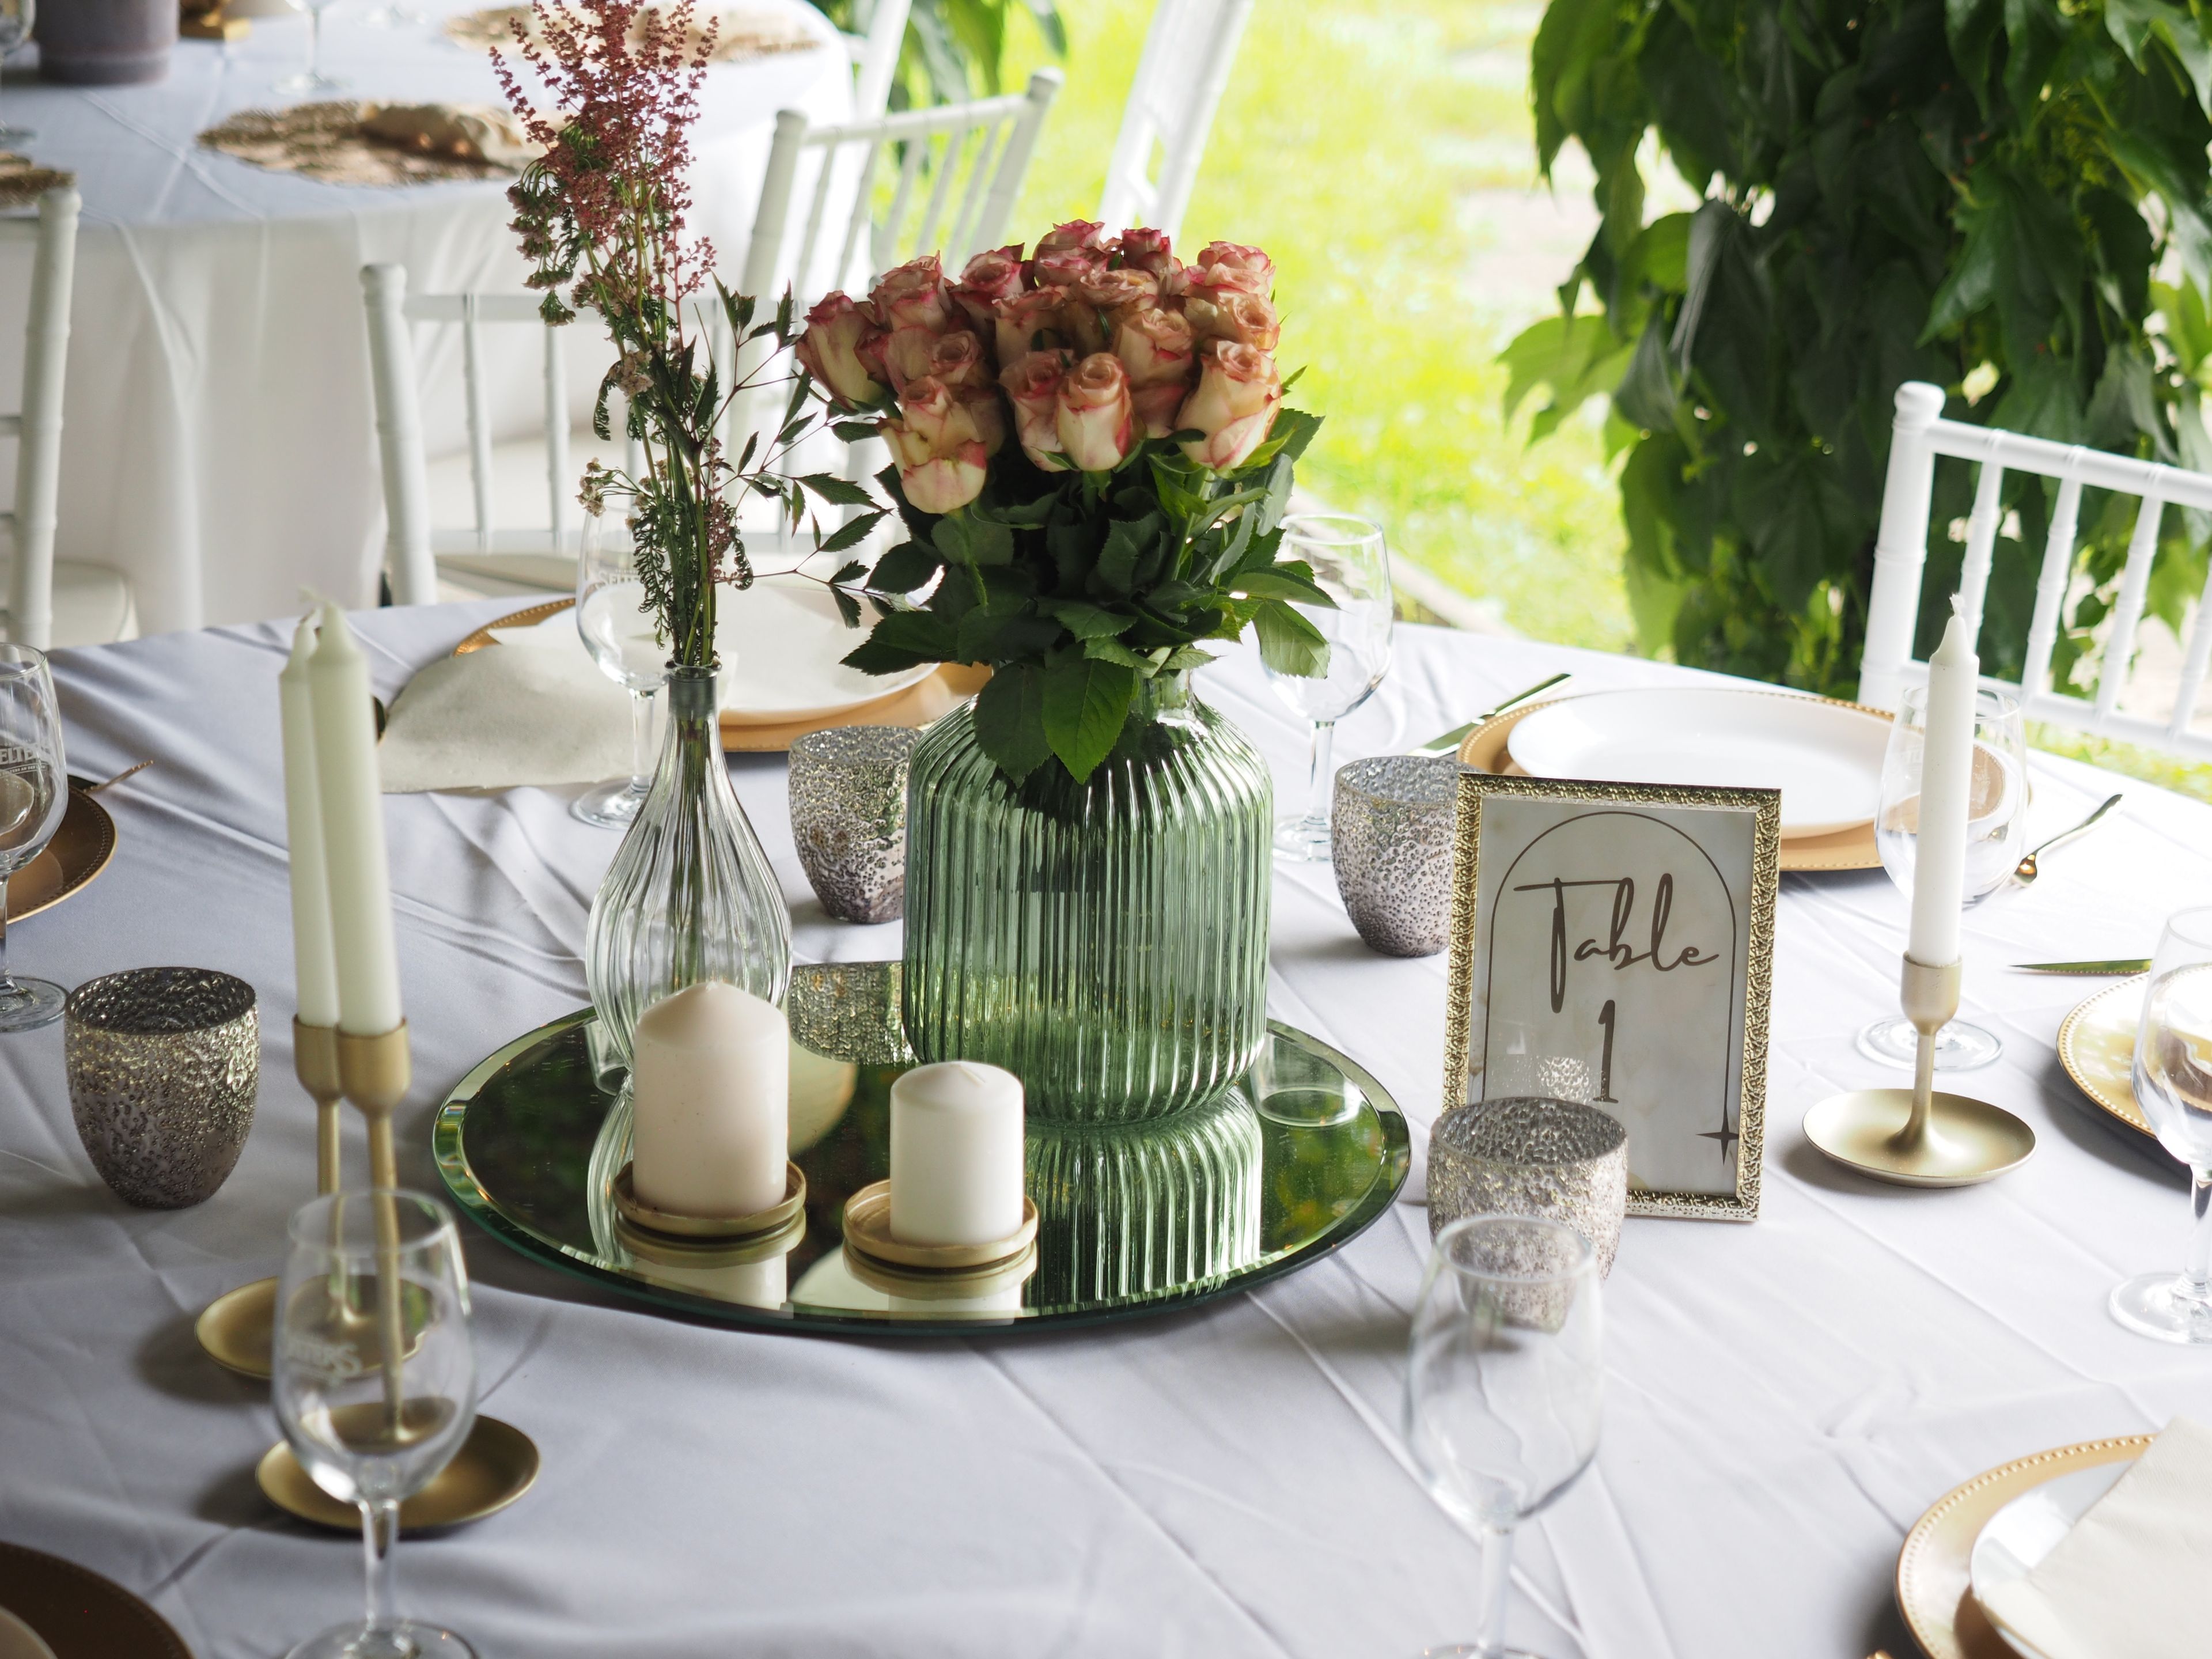 Bild von der Eindeckung und dekorativen Gestaltung des Klassisch Elegant Deko-Tisches mit Blumen und Kerzen.